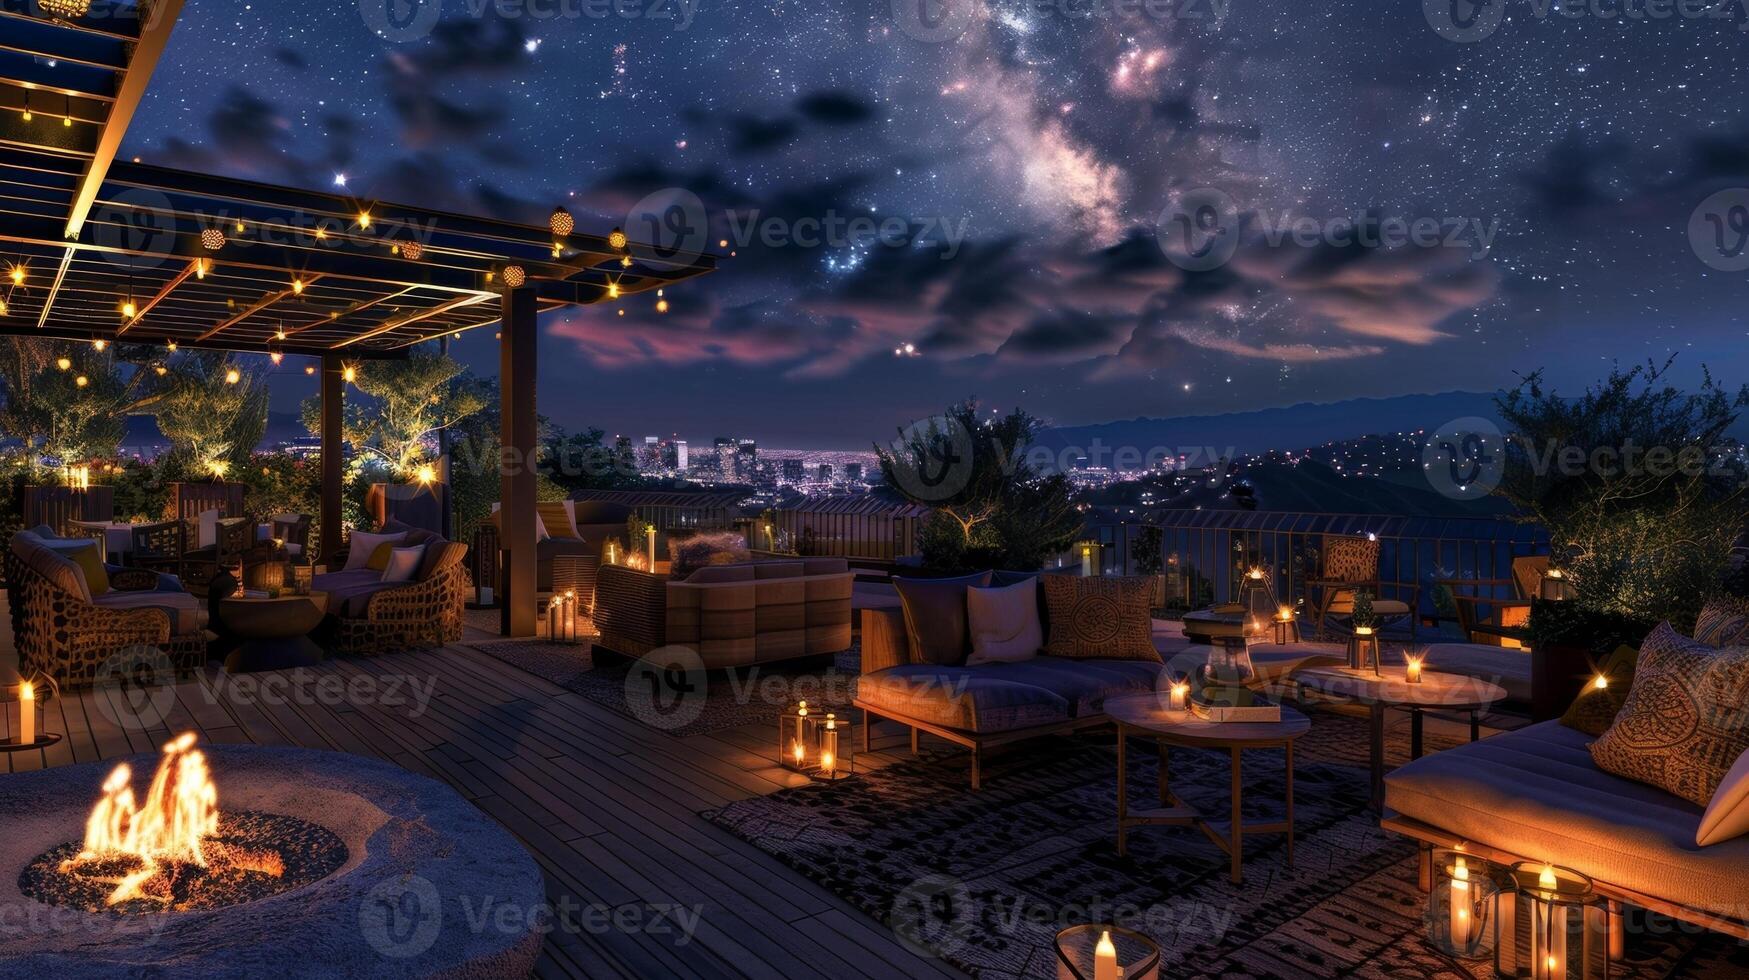 il tranquillo tetto ambientazione illuminato di fiamme e lontano stelle offerte il Perfetto fondale per un indimenticabile sera di celeste esplorazione. 2d piatto cartone animato foto